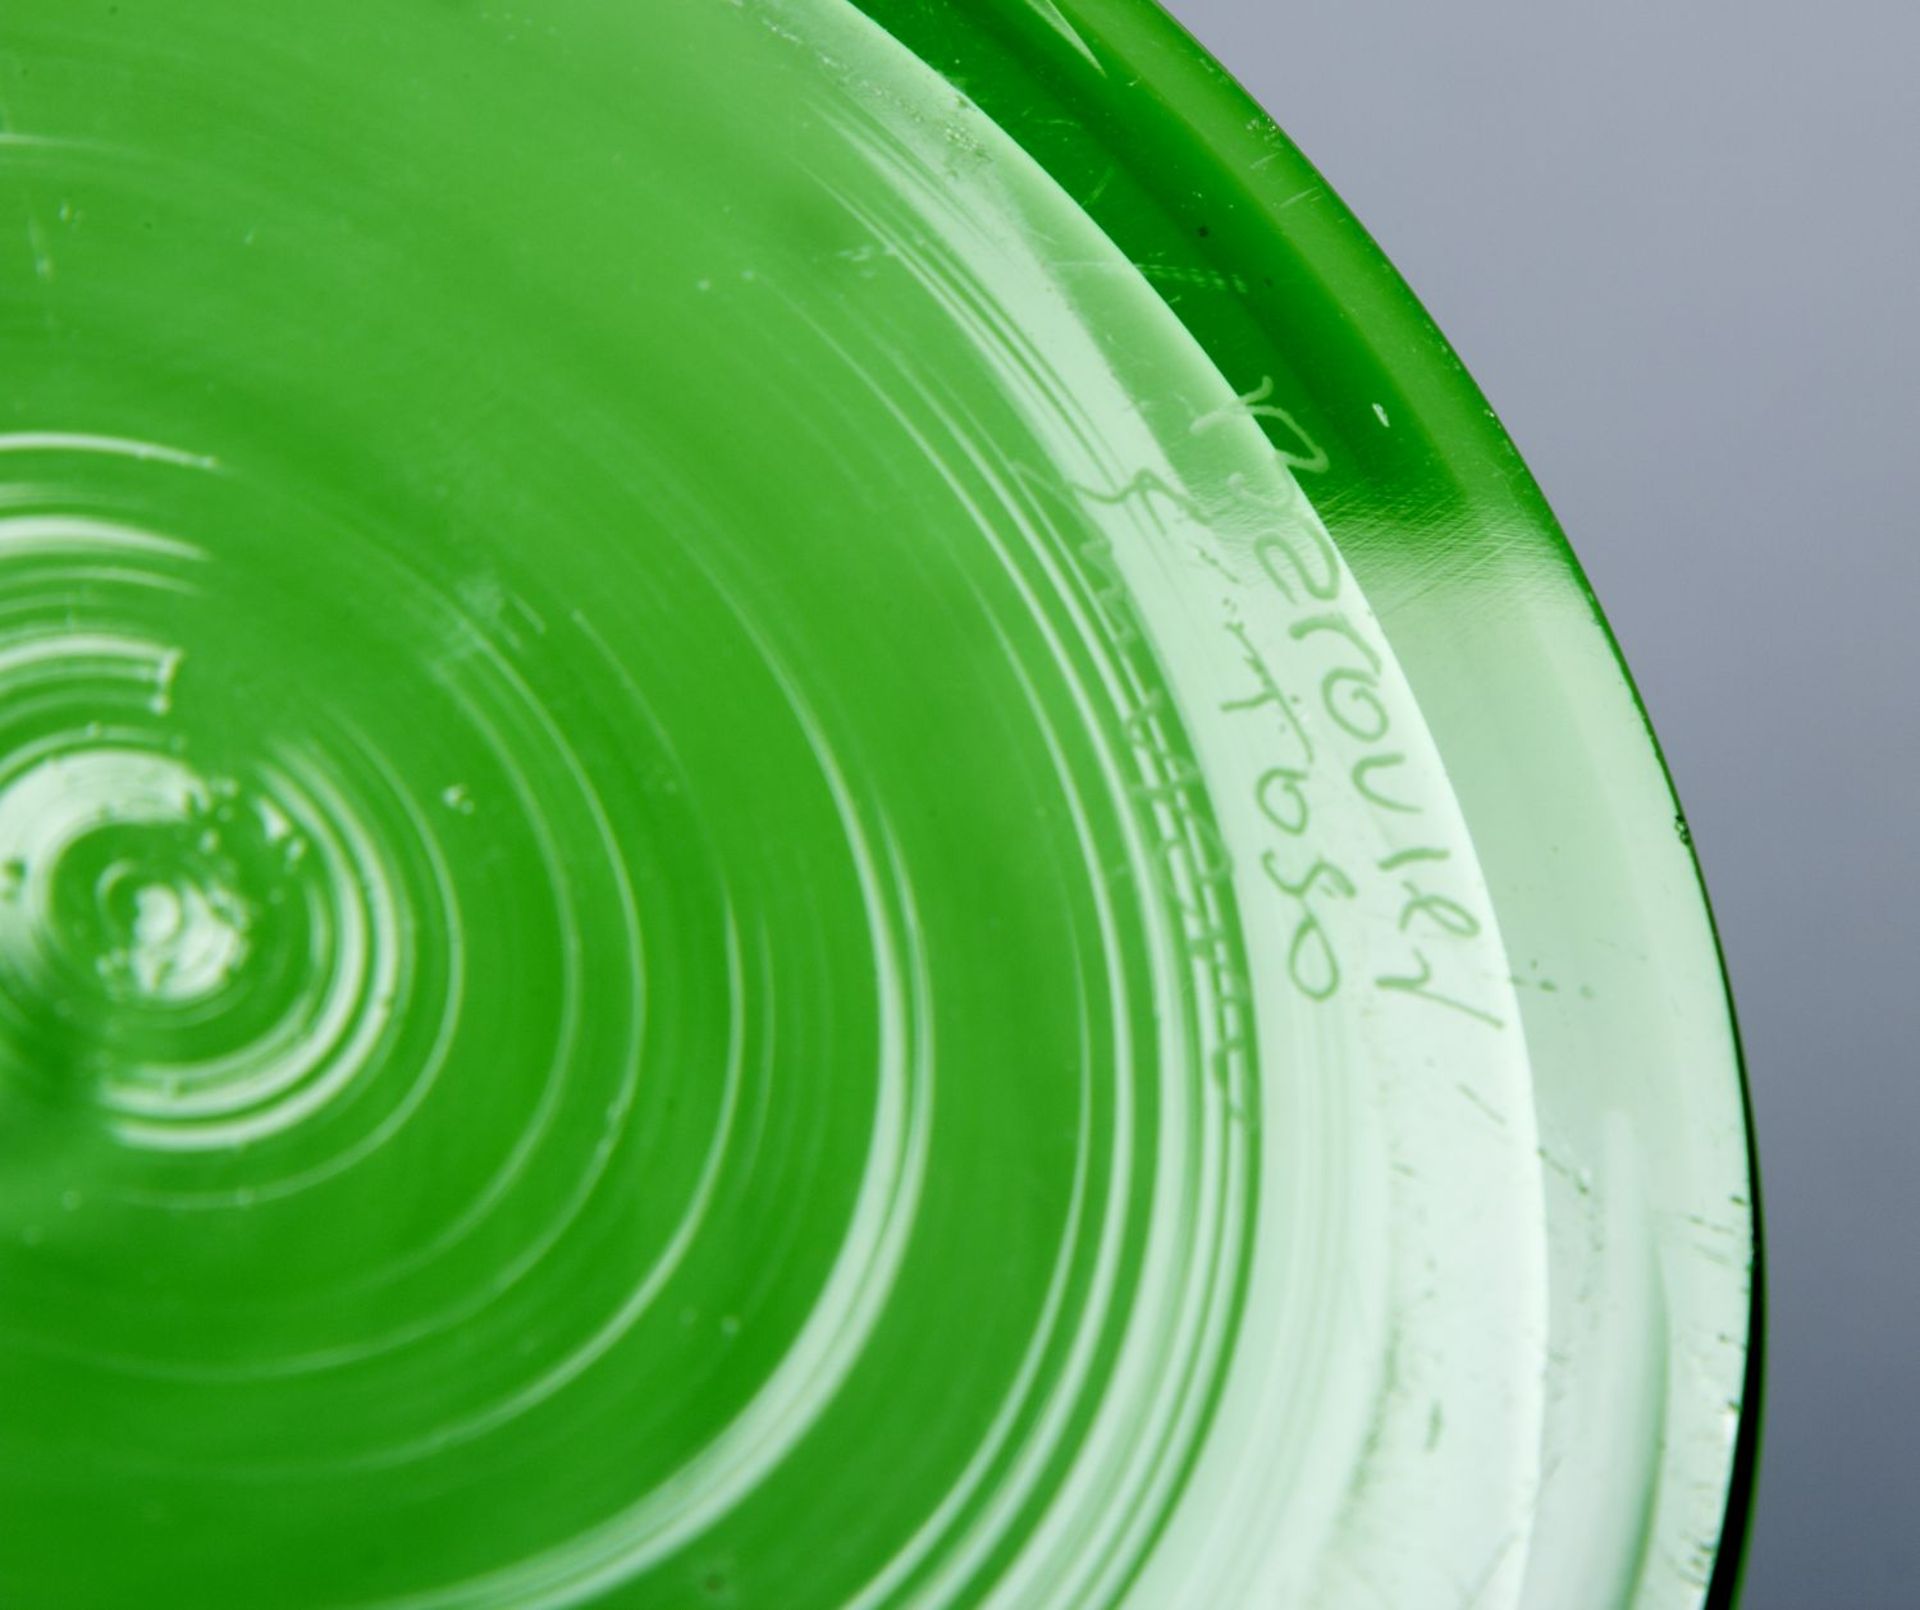 Murano-VaseFarbloses Glas, hellgrün und weiß opak unterfangen. Im Boden bez. Barovier e Toso - Bild 3 aus 3